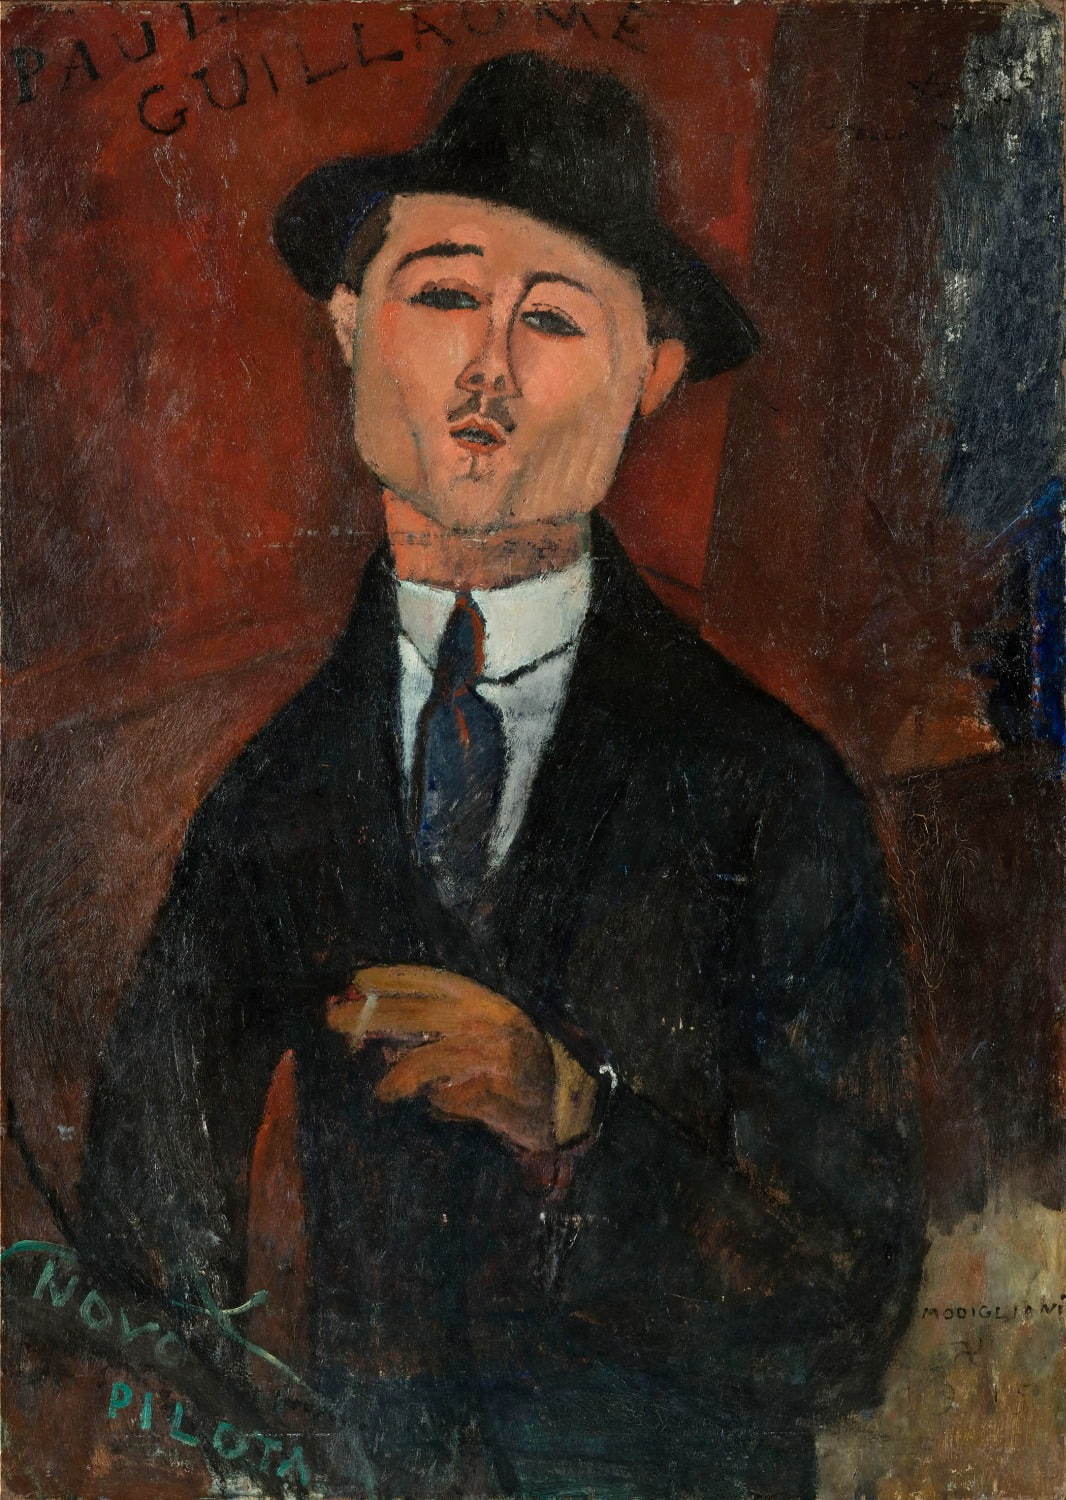 アメデオ・モディリアーニ《新しき水先案内人ポール・ギヨームの肖像》1915年、油彩・厚紙を貼った合板、105×75cm
Photo © RMN-Grand Palais (musée de l